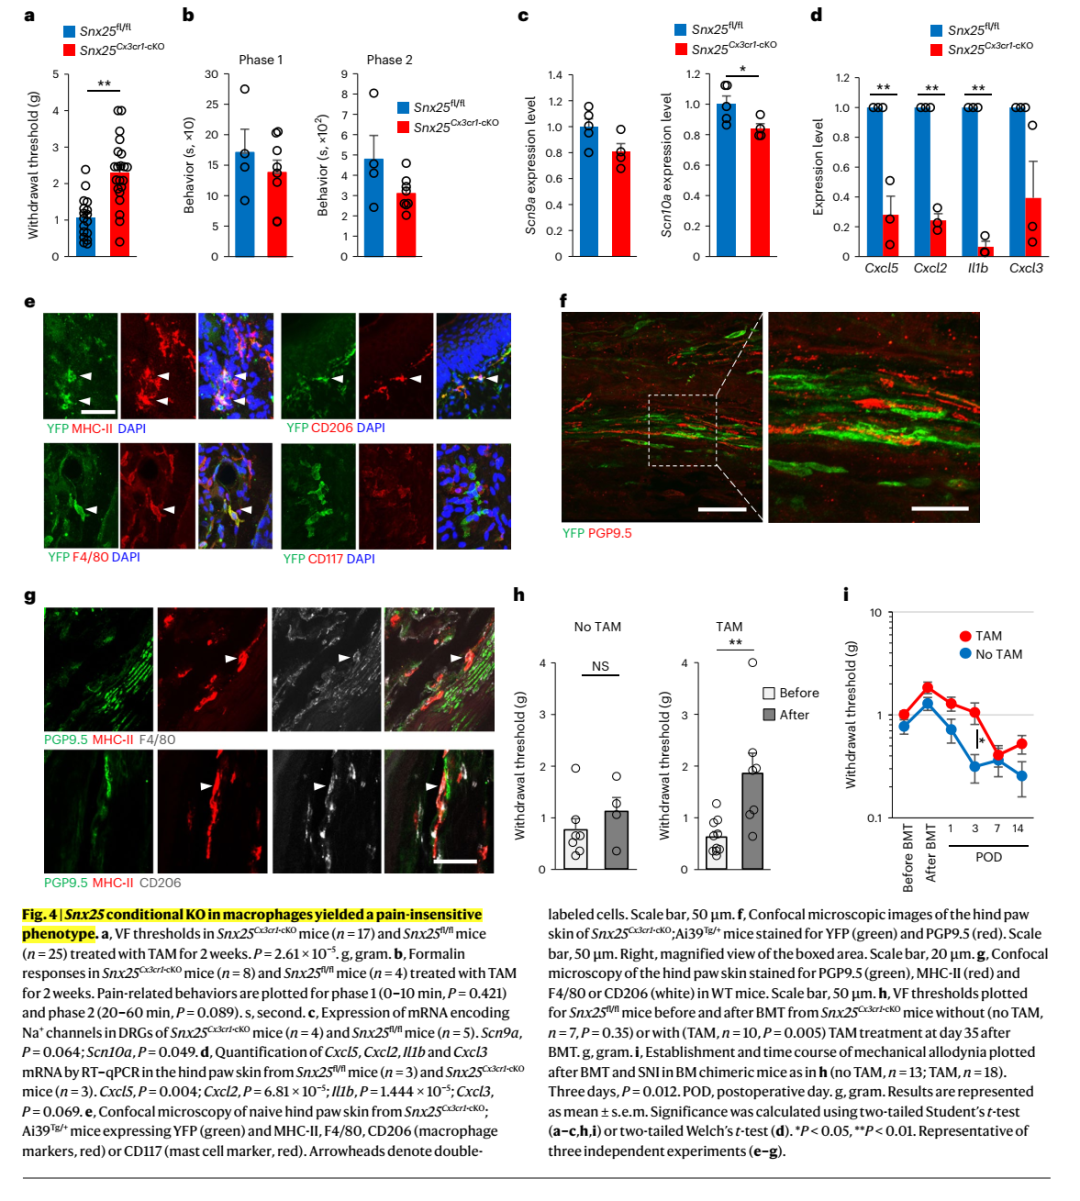 神经免疫交互调控痛觉敏感度：皮肤巨噬细胞SNX25通过调控NGF的表达进而<font color="red">设定</font>痛觉敏感度